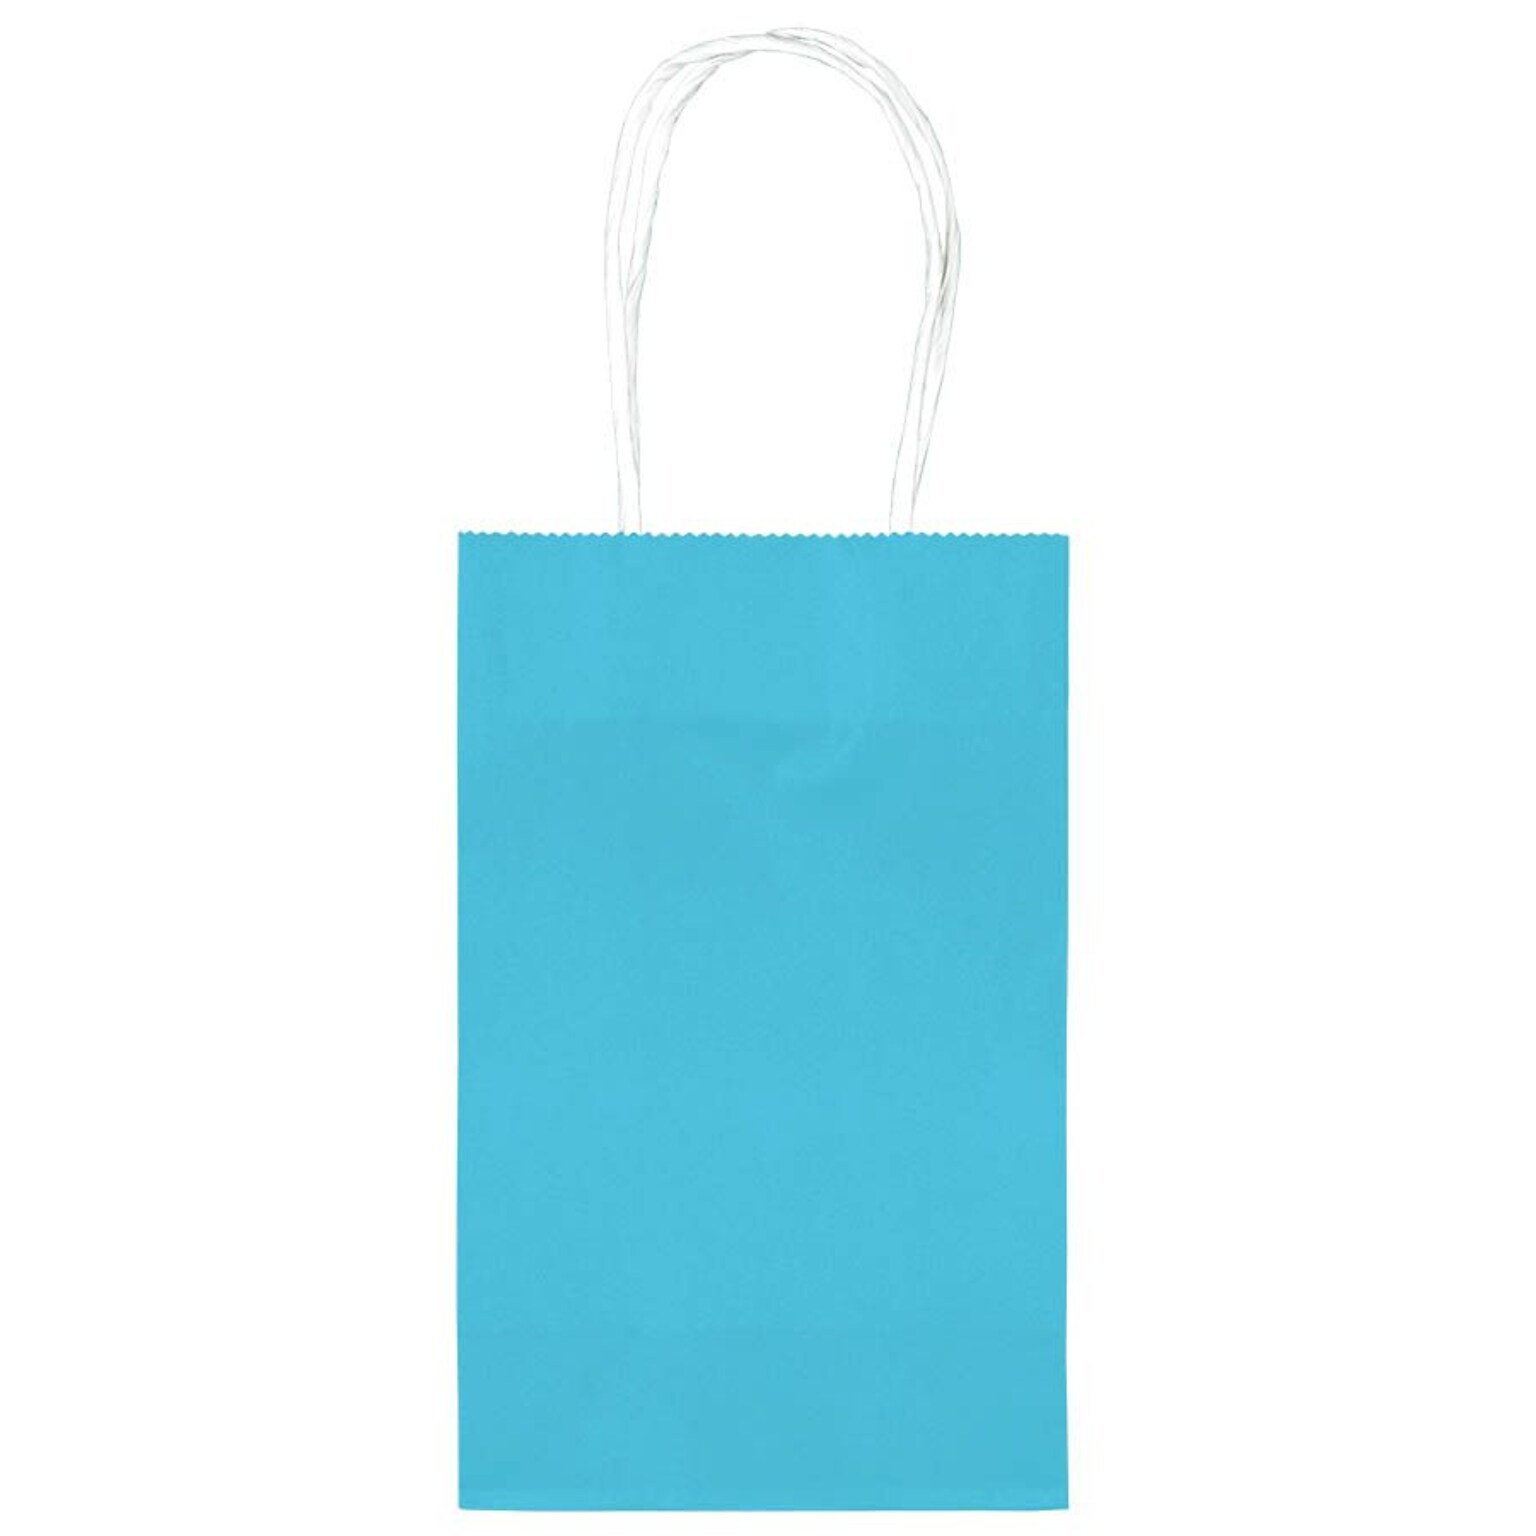 Amscan Kraft Paper Bag, 8.25 x 5.25, Caribbean Blue, 4/Pack, 10 Bags/Pack (162500.54)